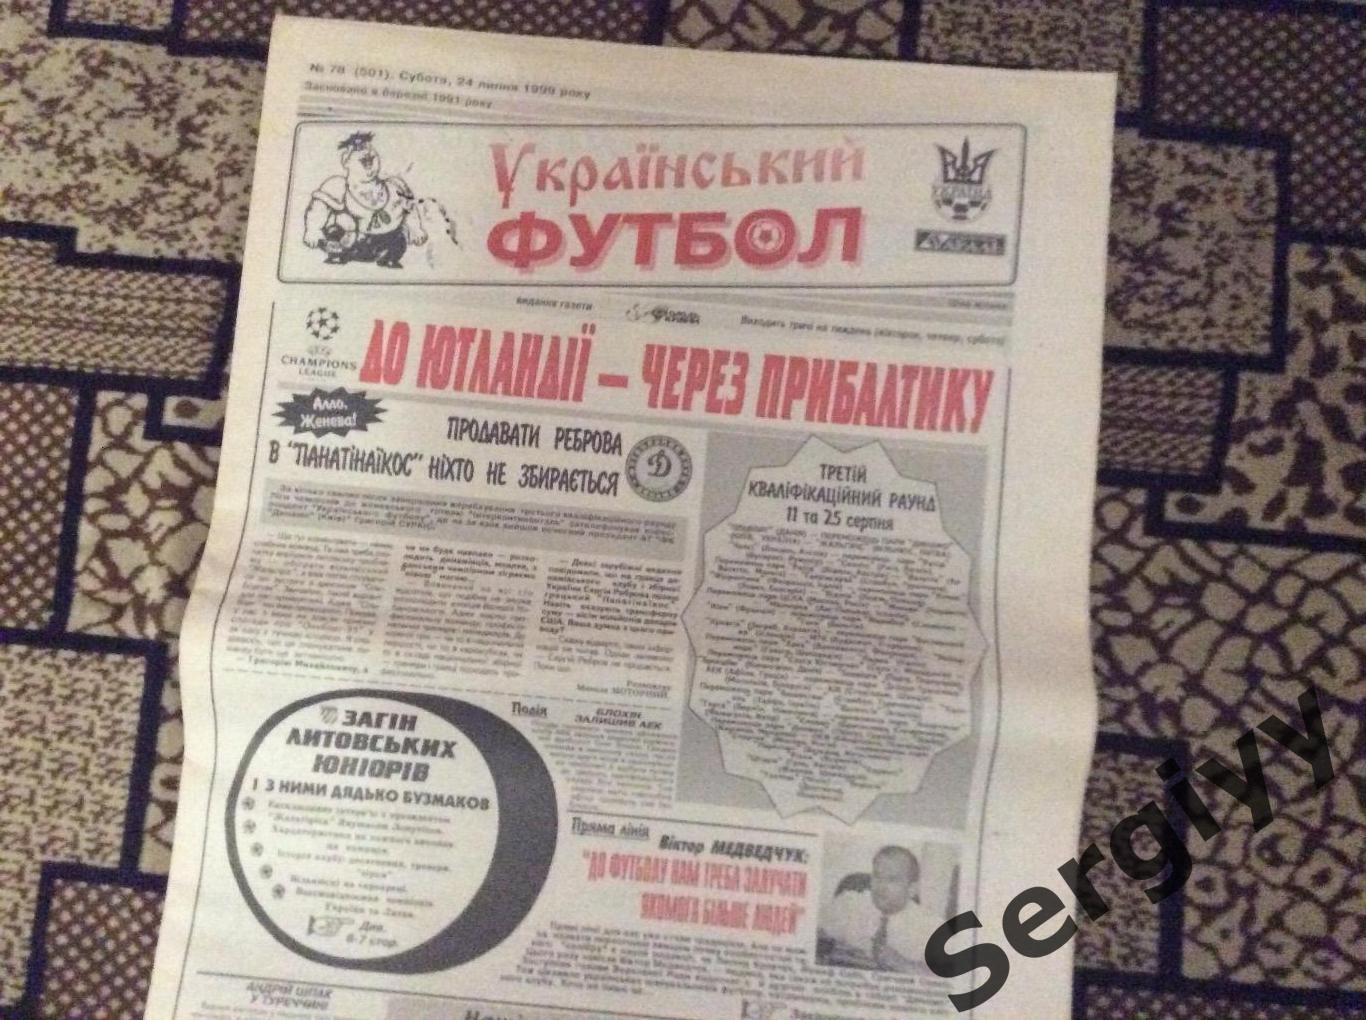 Український футбол номер 78 від 24.07.1999р